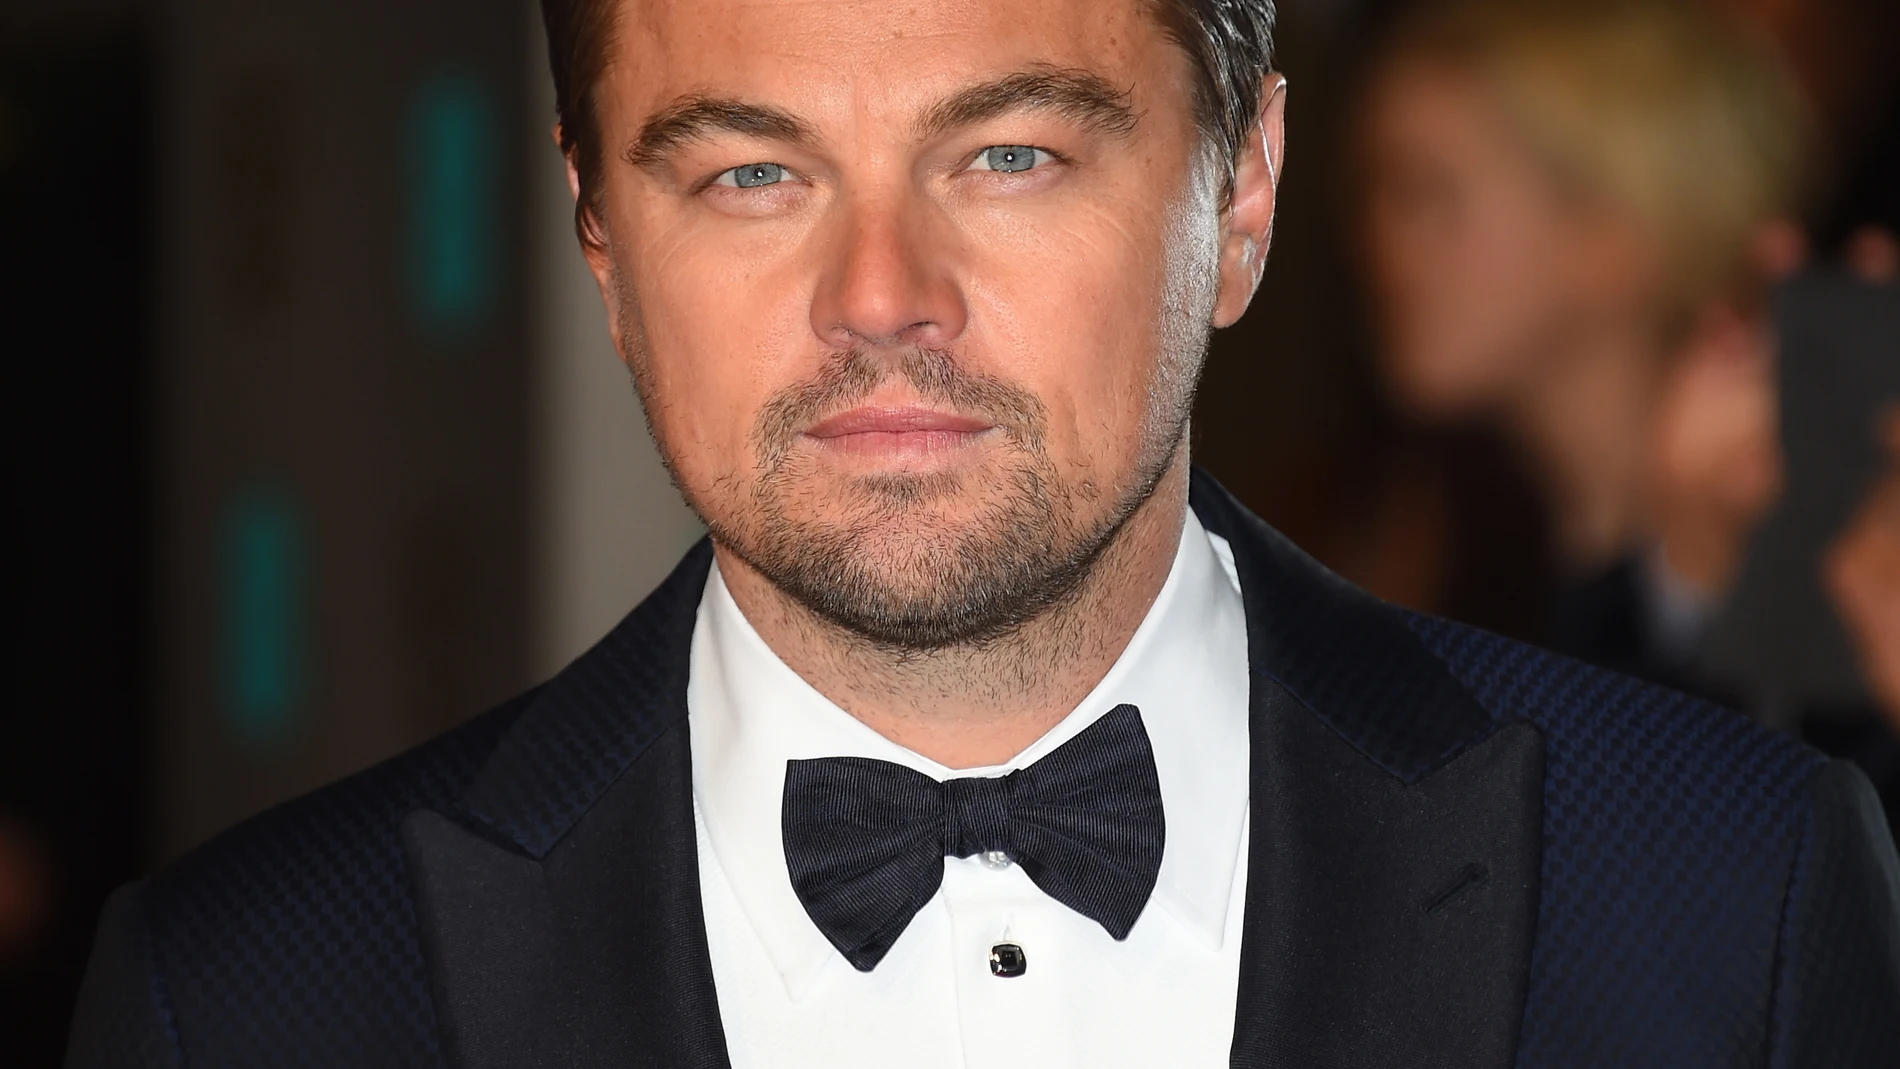 Actor Leonardo Di Caprio at the BAFTA 2016 film awards in London